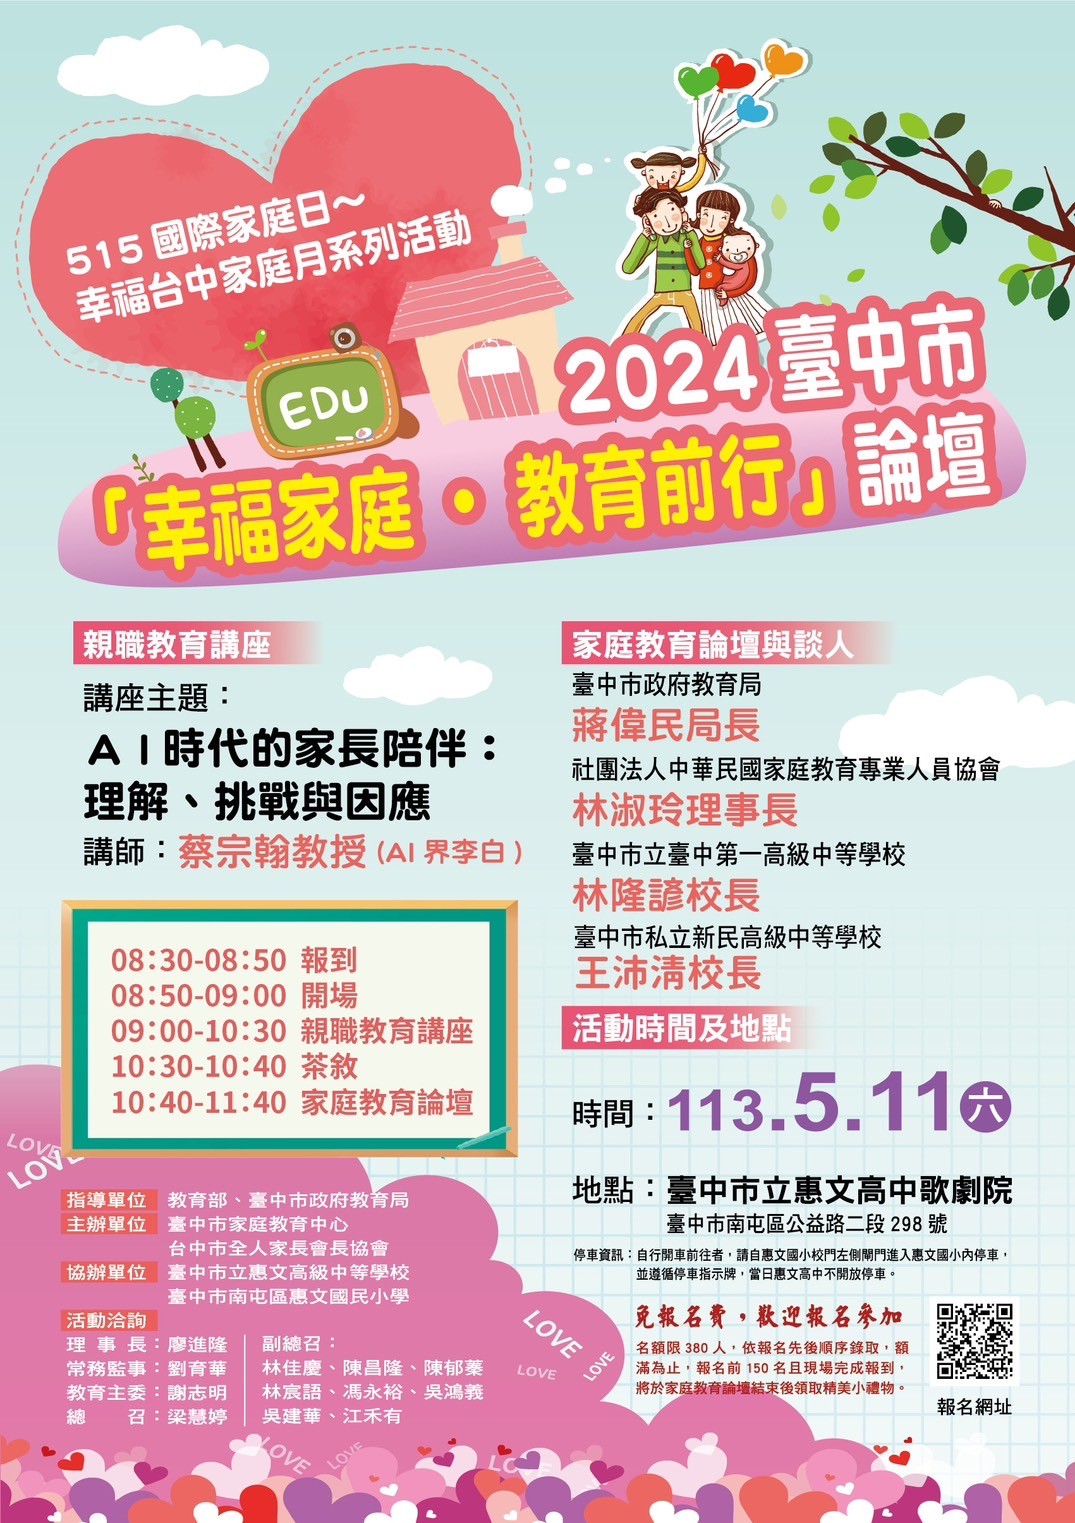 【轉知】 《2024臺中市-幸福家庭‧教育前行-論壇》